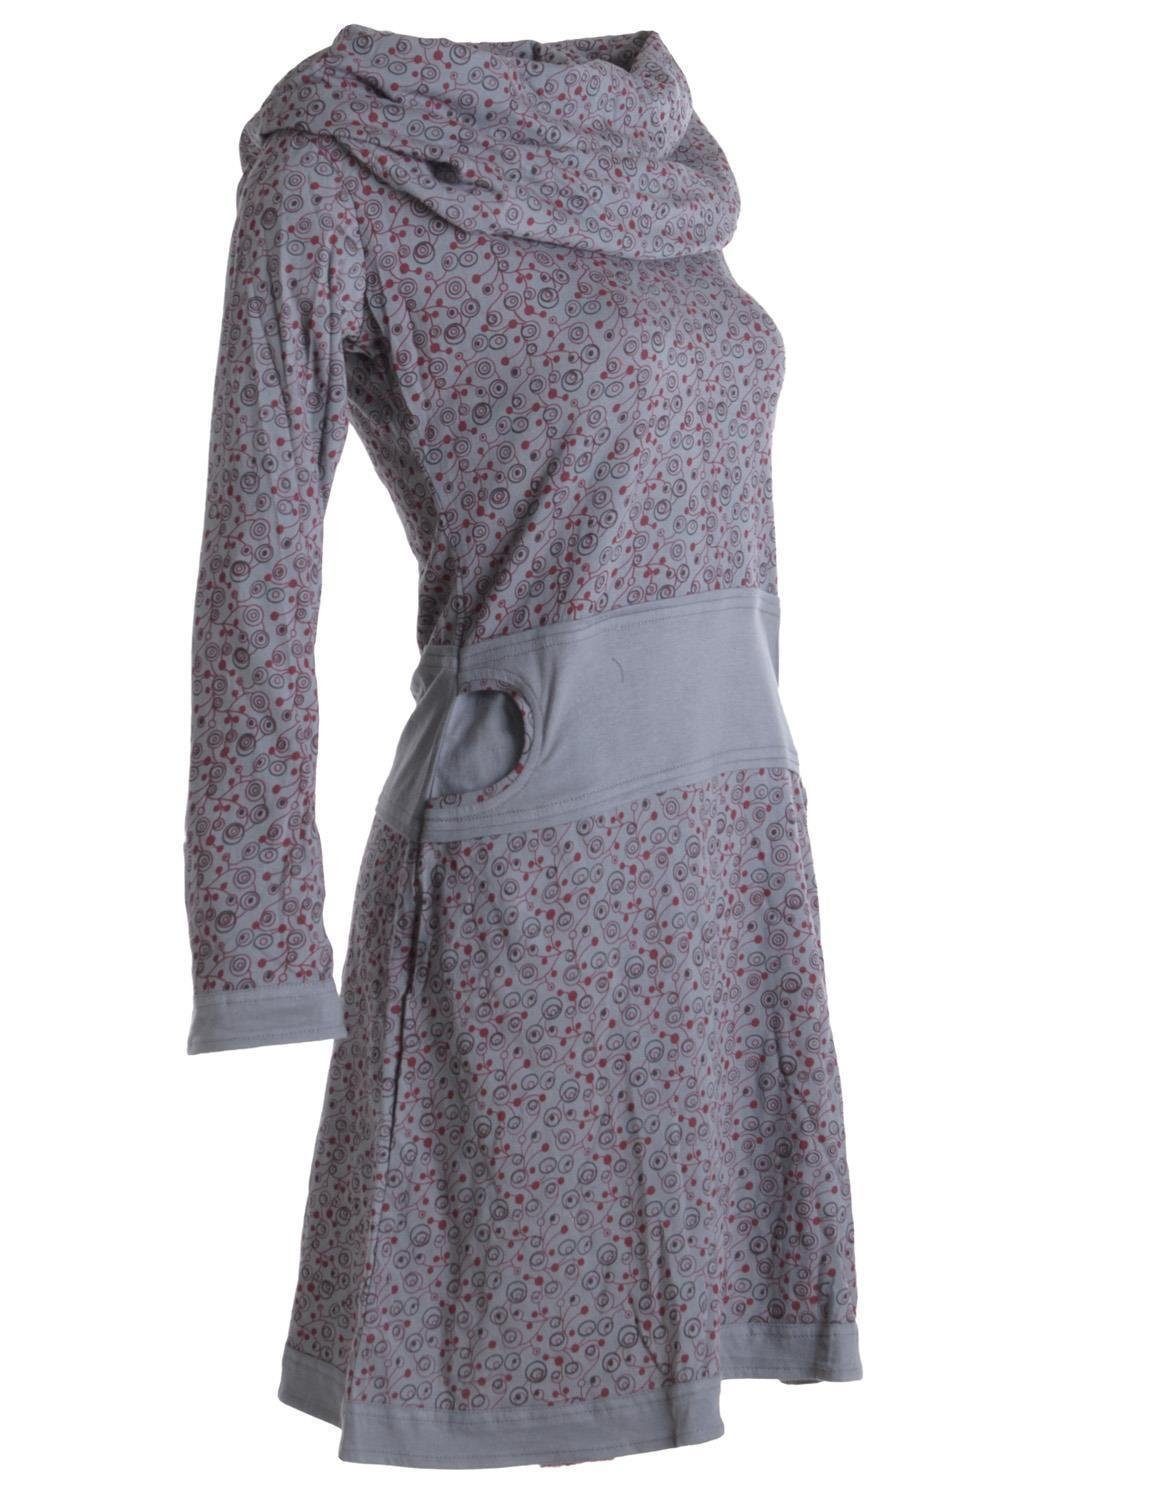 Vishes Jerseykleid Bedrucktes Boho, Schalkragen Baumwolle mit Kleid Style Hippie grau Goa, Ethno, aus